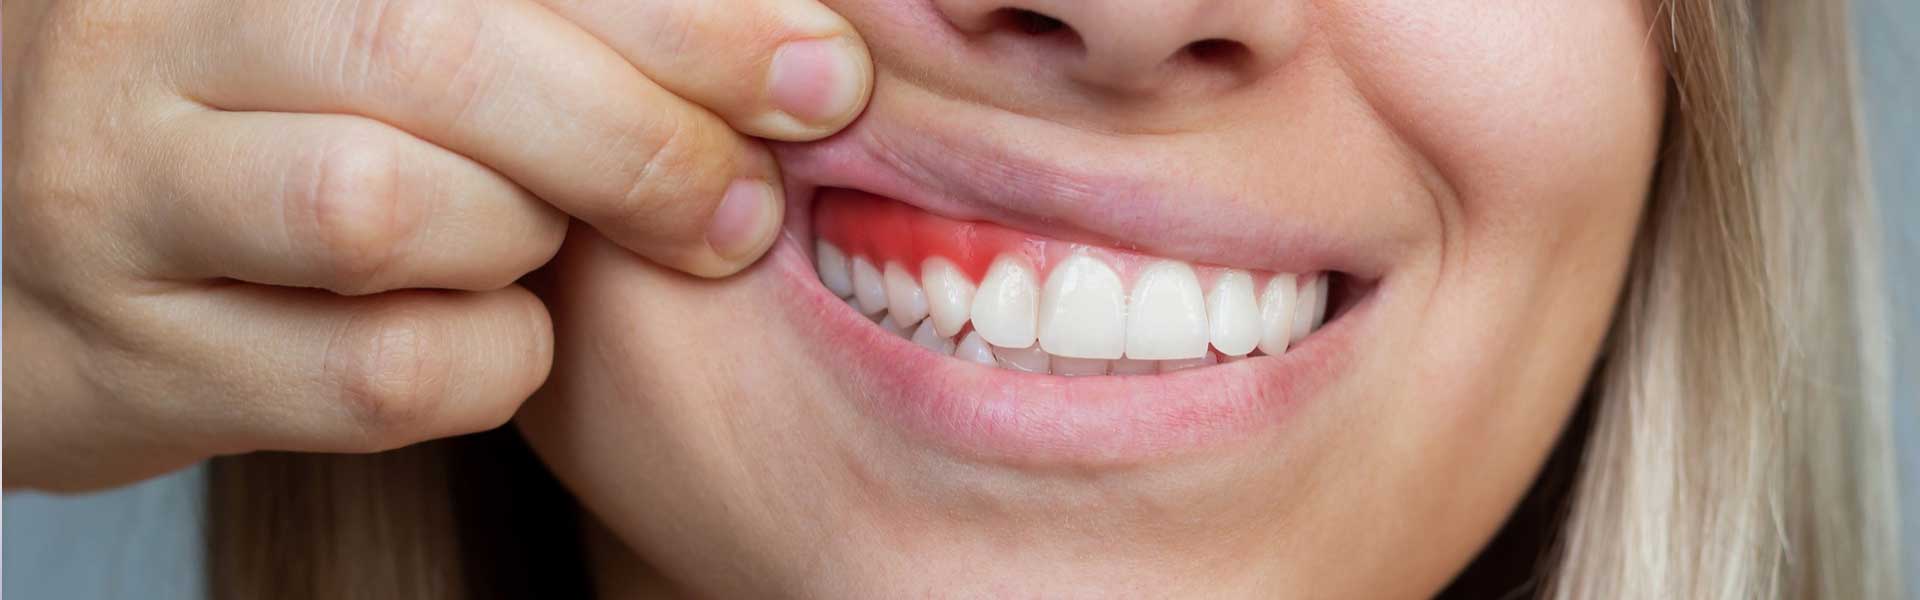 Encías - Clínica dental Brasilocho - Clínica dental Cádiz - Odontología - Dentistas en Cádiz